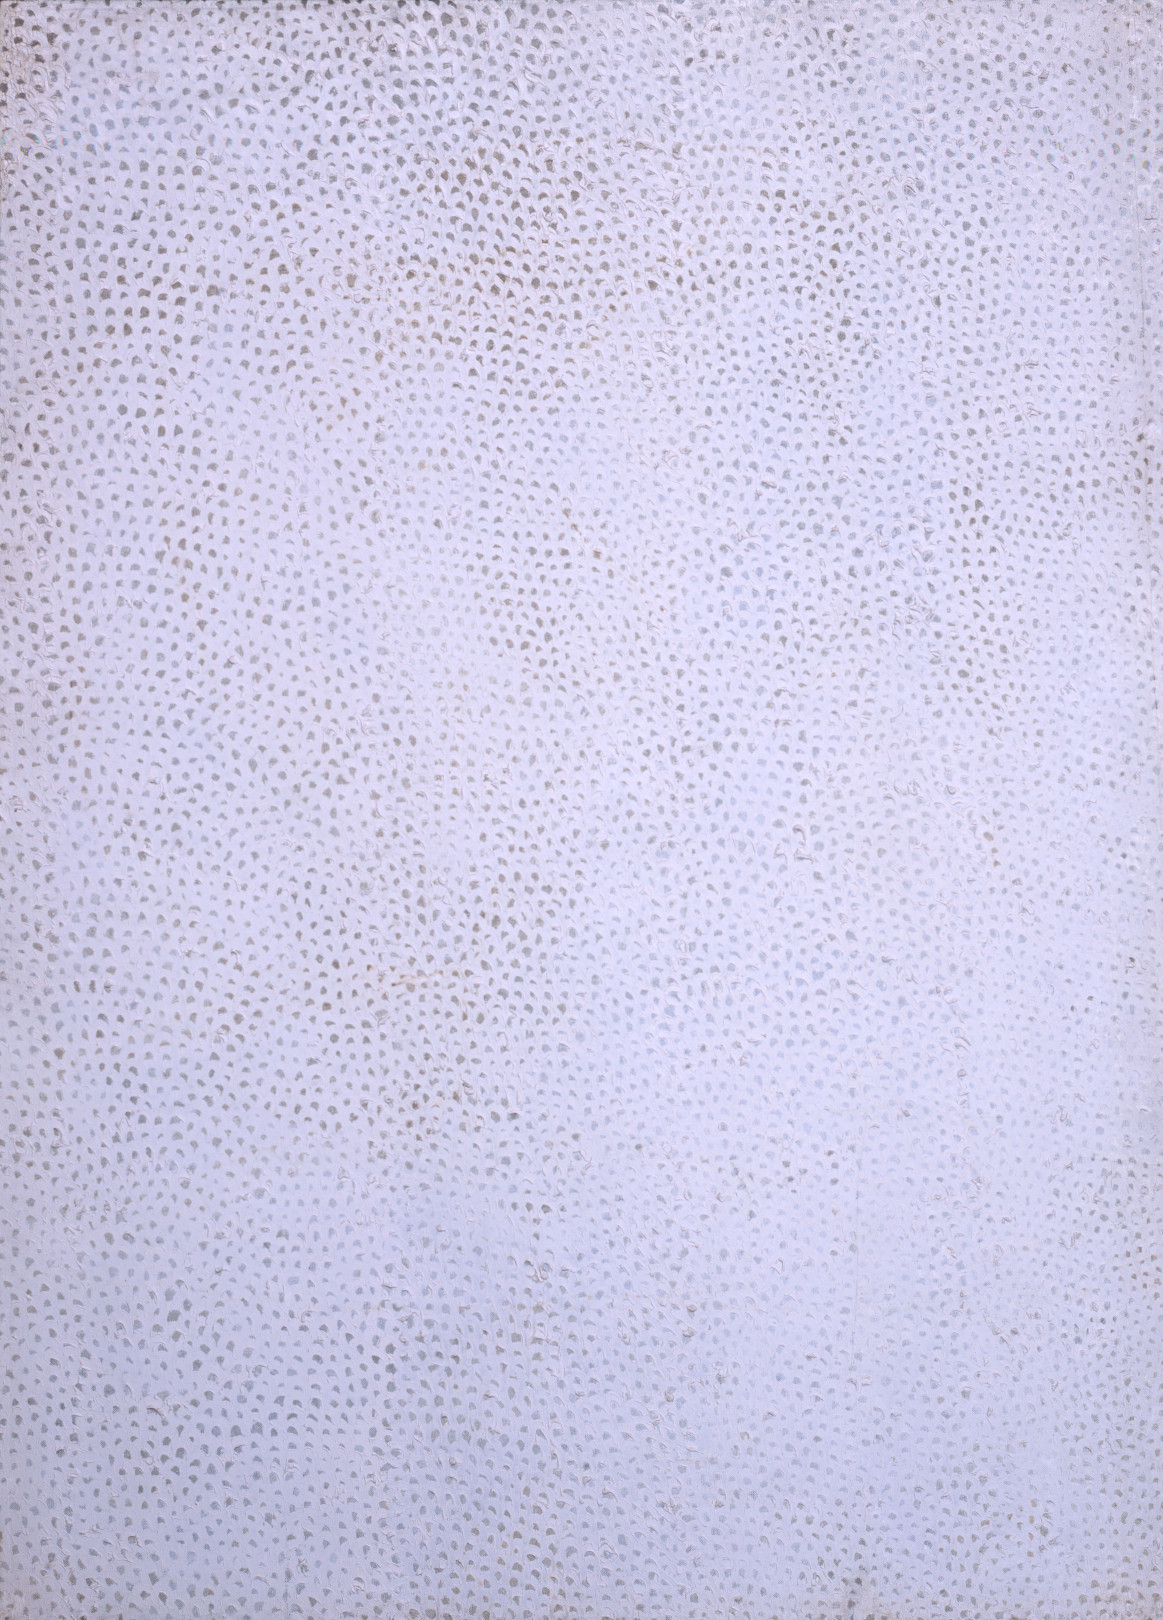 草間彌生 Infinity Nets (2) 1958 油彩・キャンバス 125.2x91cm ©YAYOI KUSAMA